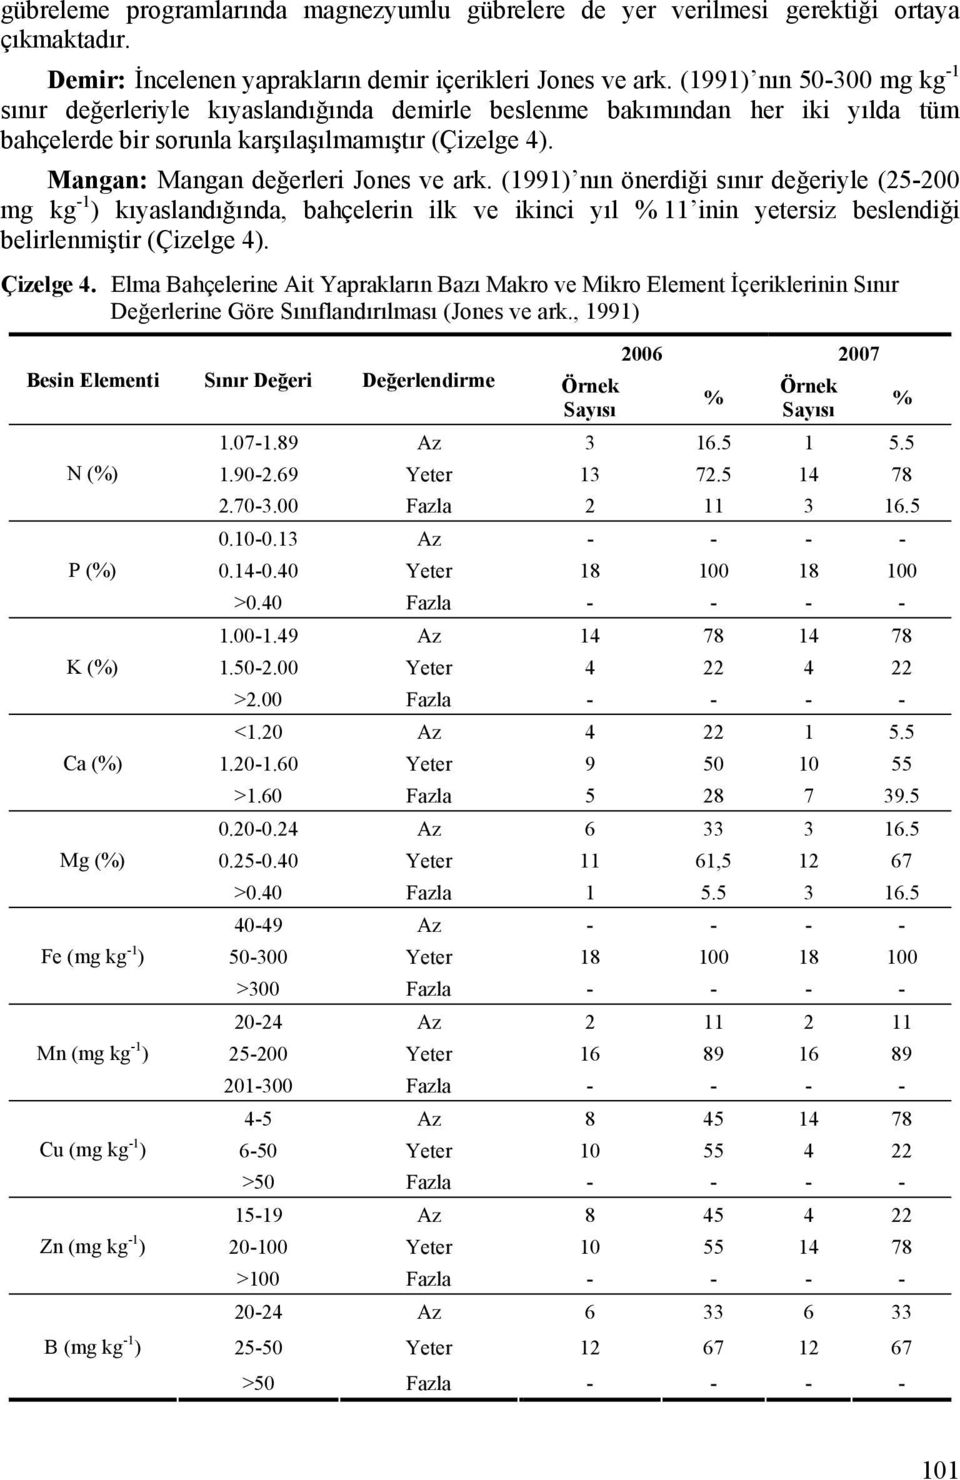 Mangan: Mangan değerleri Jones ve ark. (1991) nın önerdiği sınır değeriyle (25-200 mg kg -1 ) kıyaslandığında, bahçelerin ilk ve ikinci yıl % 11 inin yetersiz beslendiği belirlenmiştir (Çizelge 4).